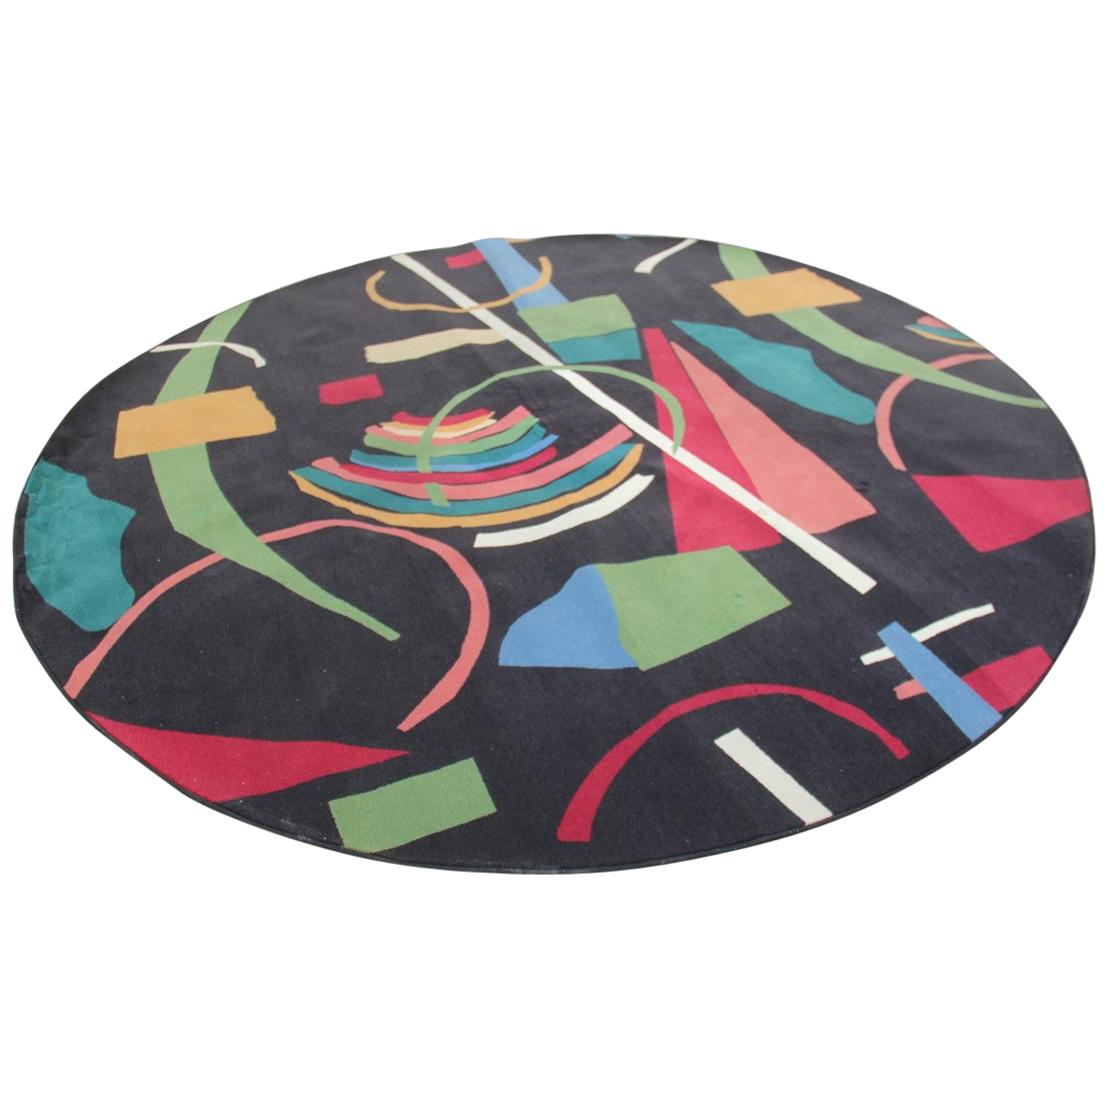 Round Large Carpet Diameter Black with Multicolored Italian Design, 1960